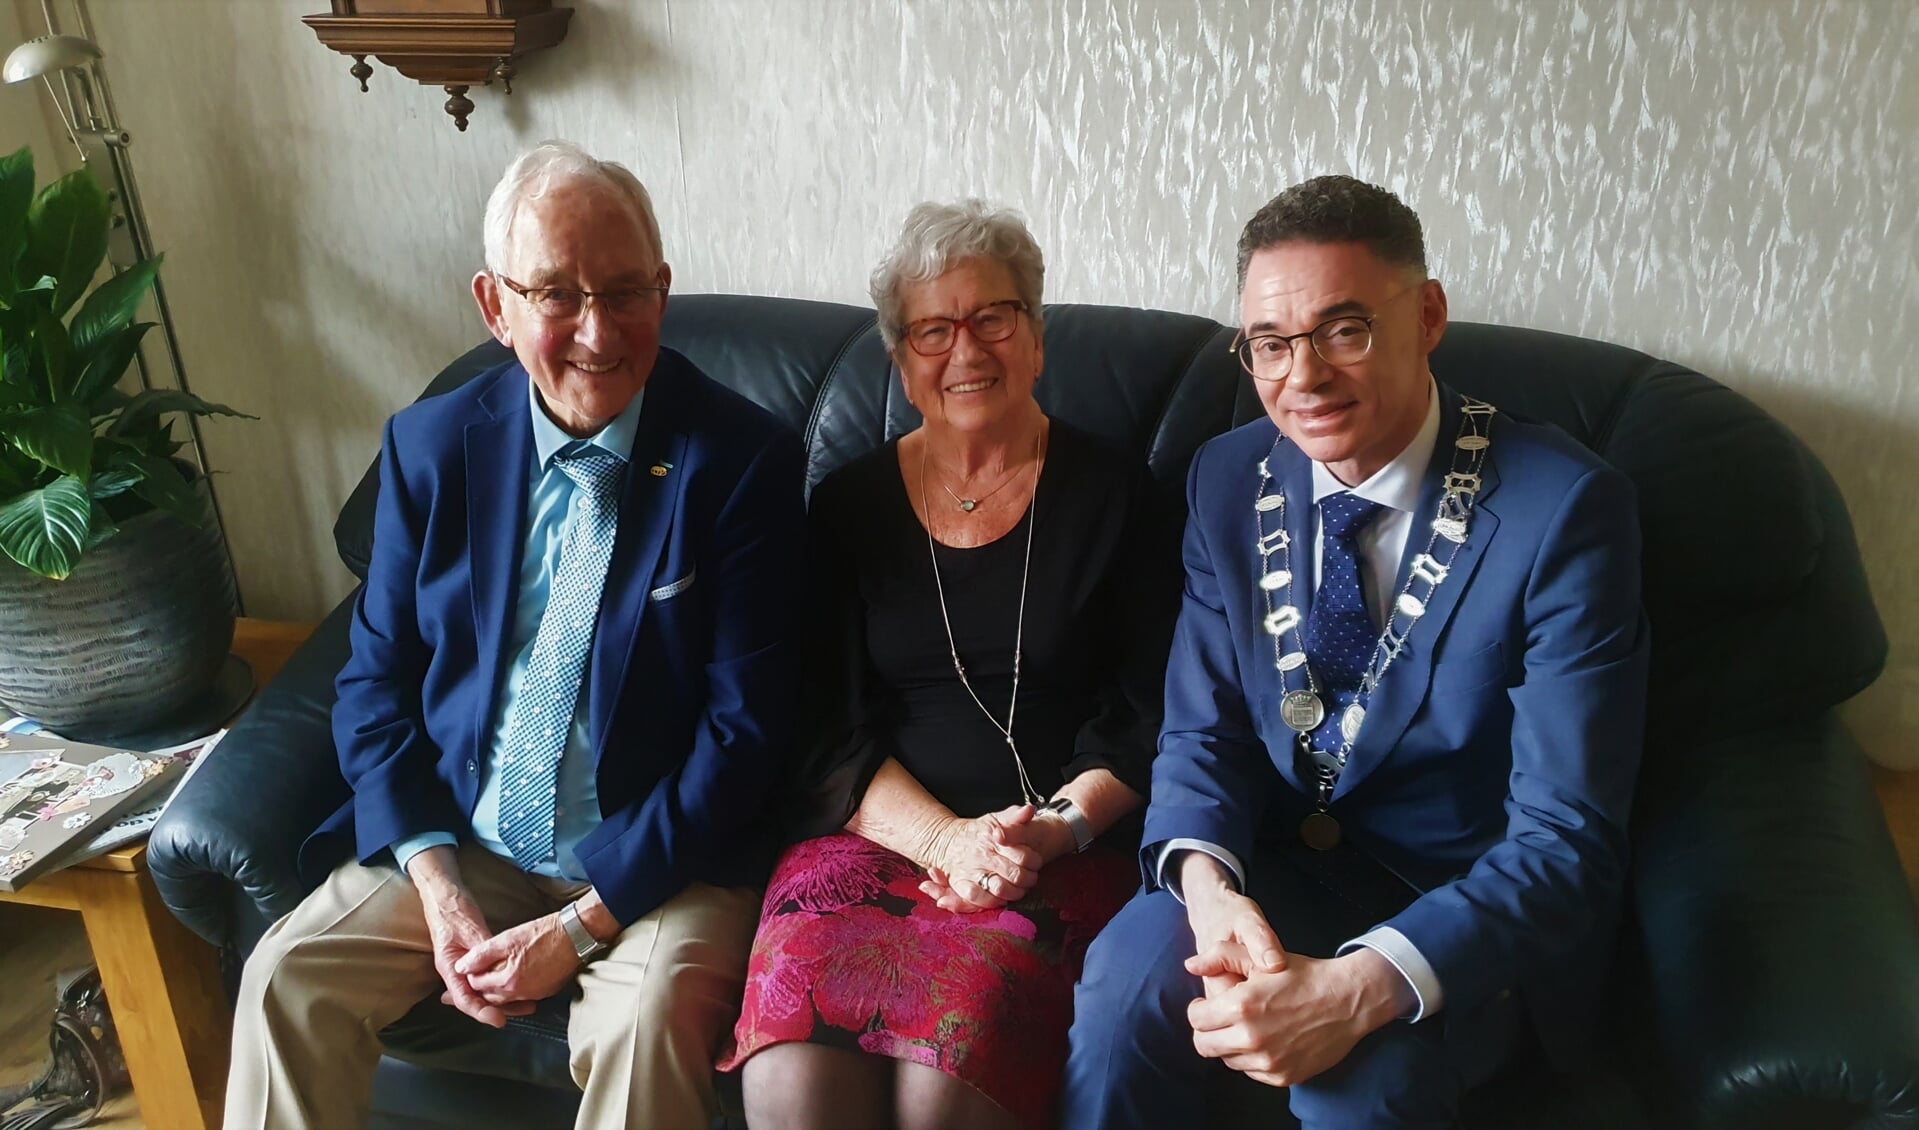 Symen en Gerrie vonden het bezoek van de burgemeester bijzonder gezellig en een hele eer